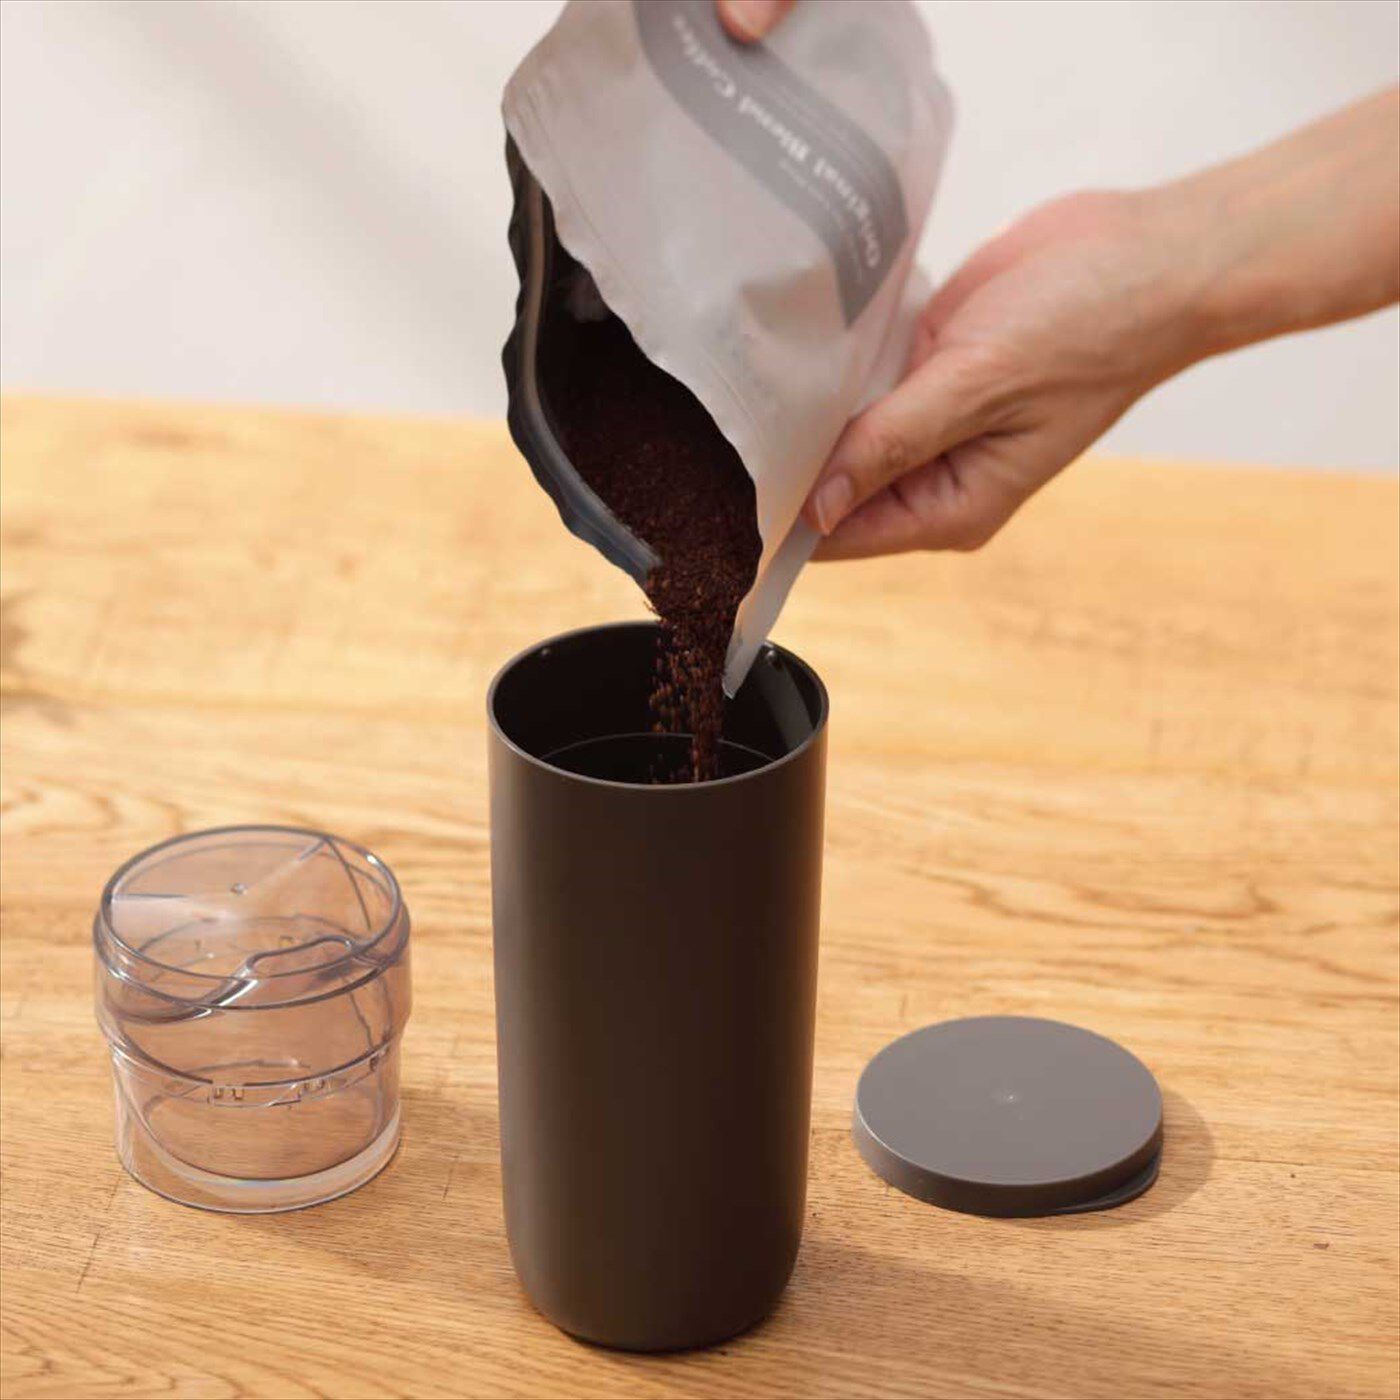 ミニツク|ひと振りで粉が量れる コーヒー粉キャニスター